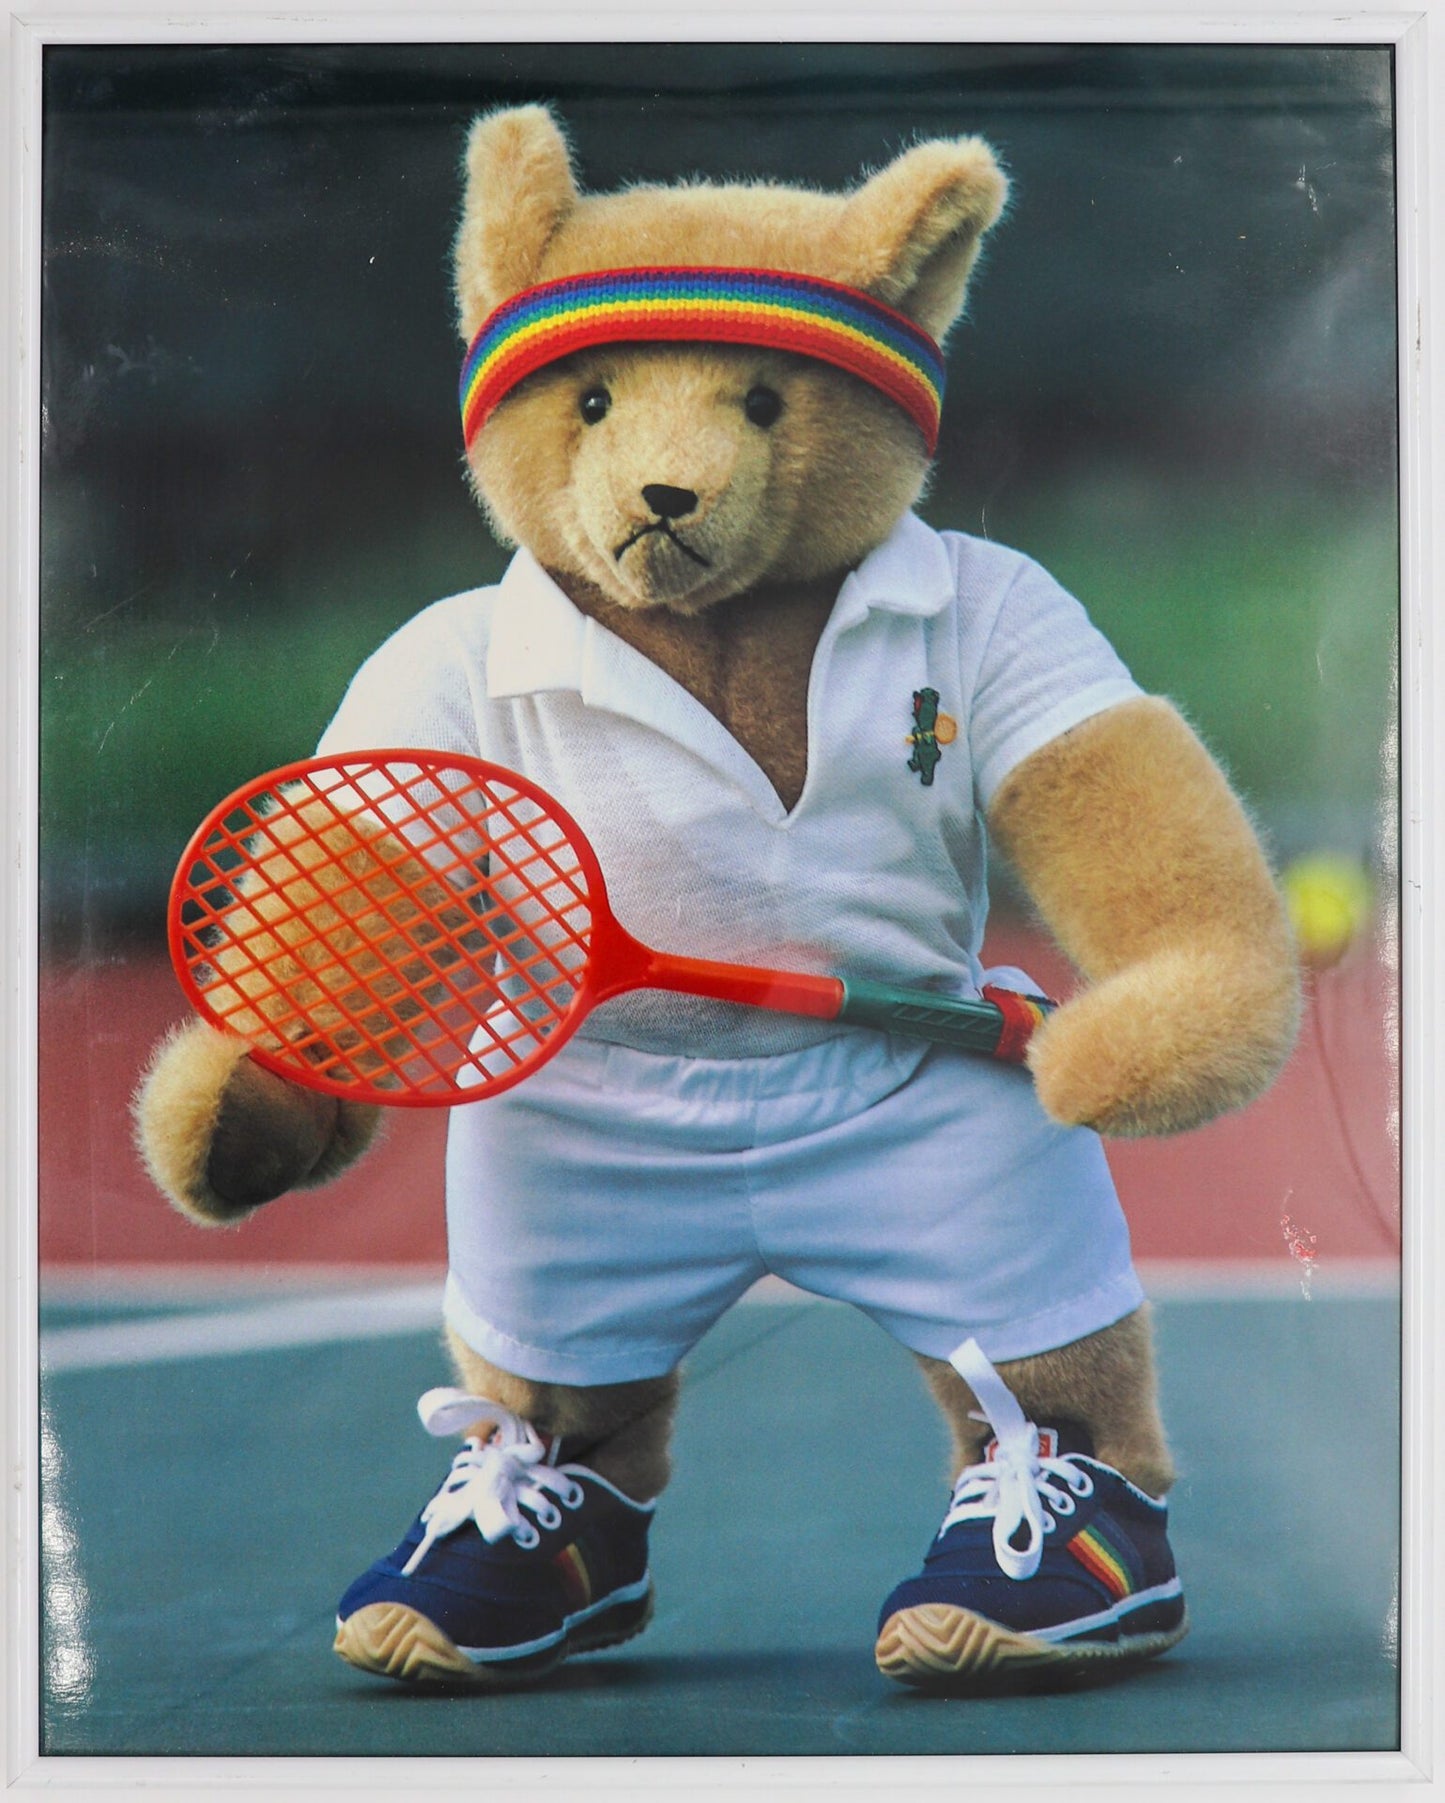 Portrait Of A Tennis-Playing Teddy Bear